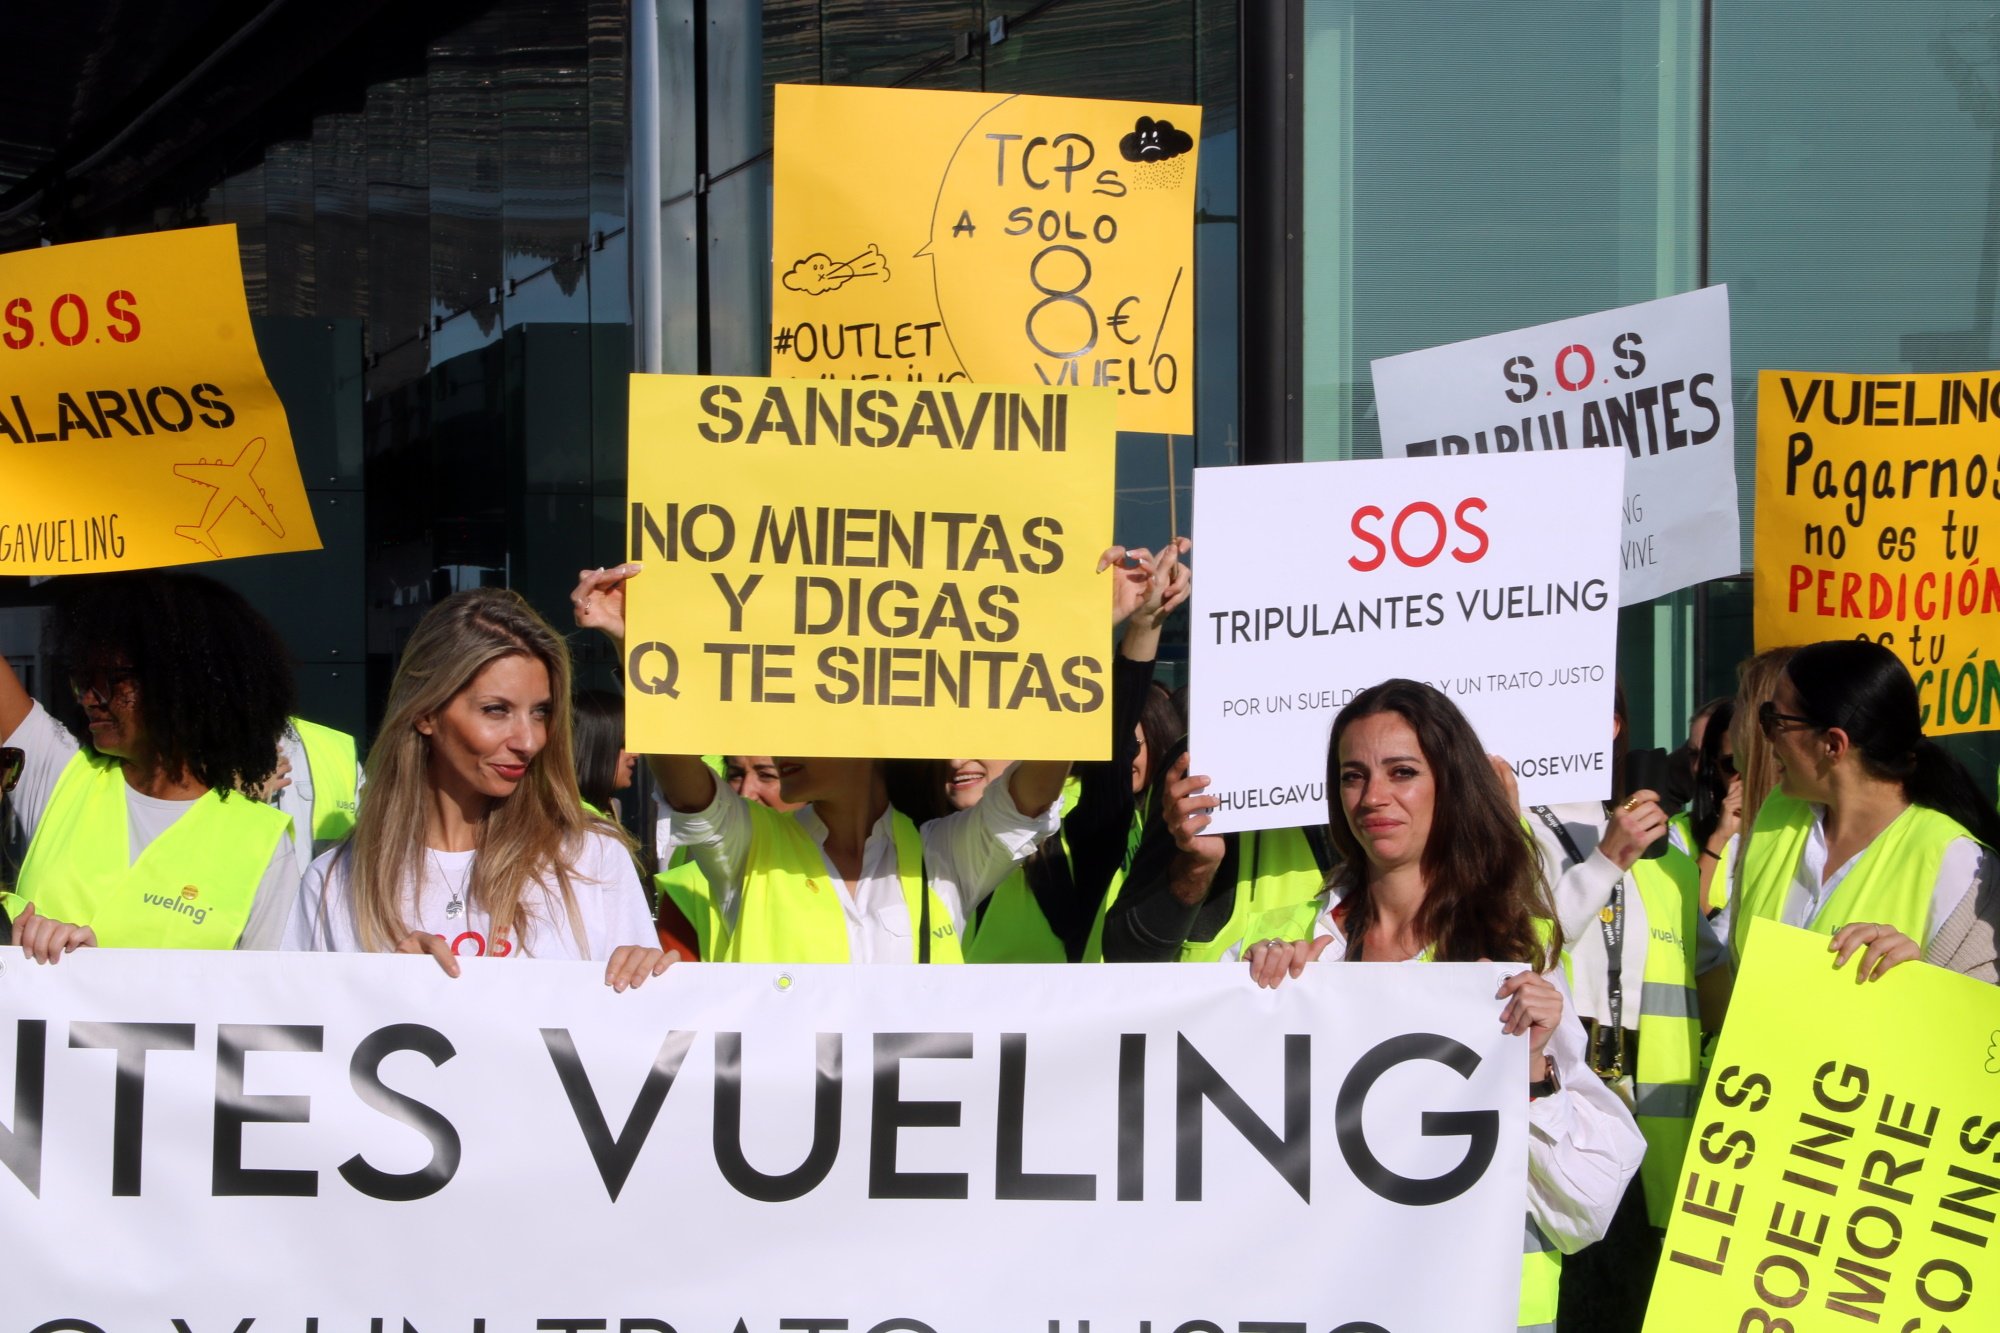 Vueling cancel·la 29 vols a l'aeroport del Prat a causa de la vaga dels tripulants de cabina